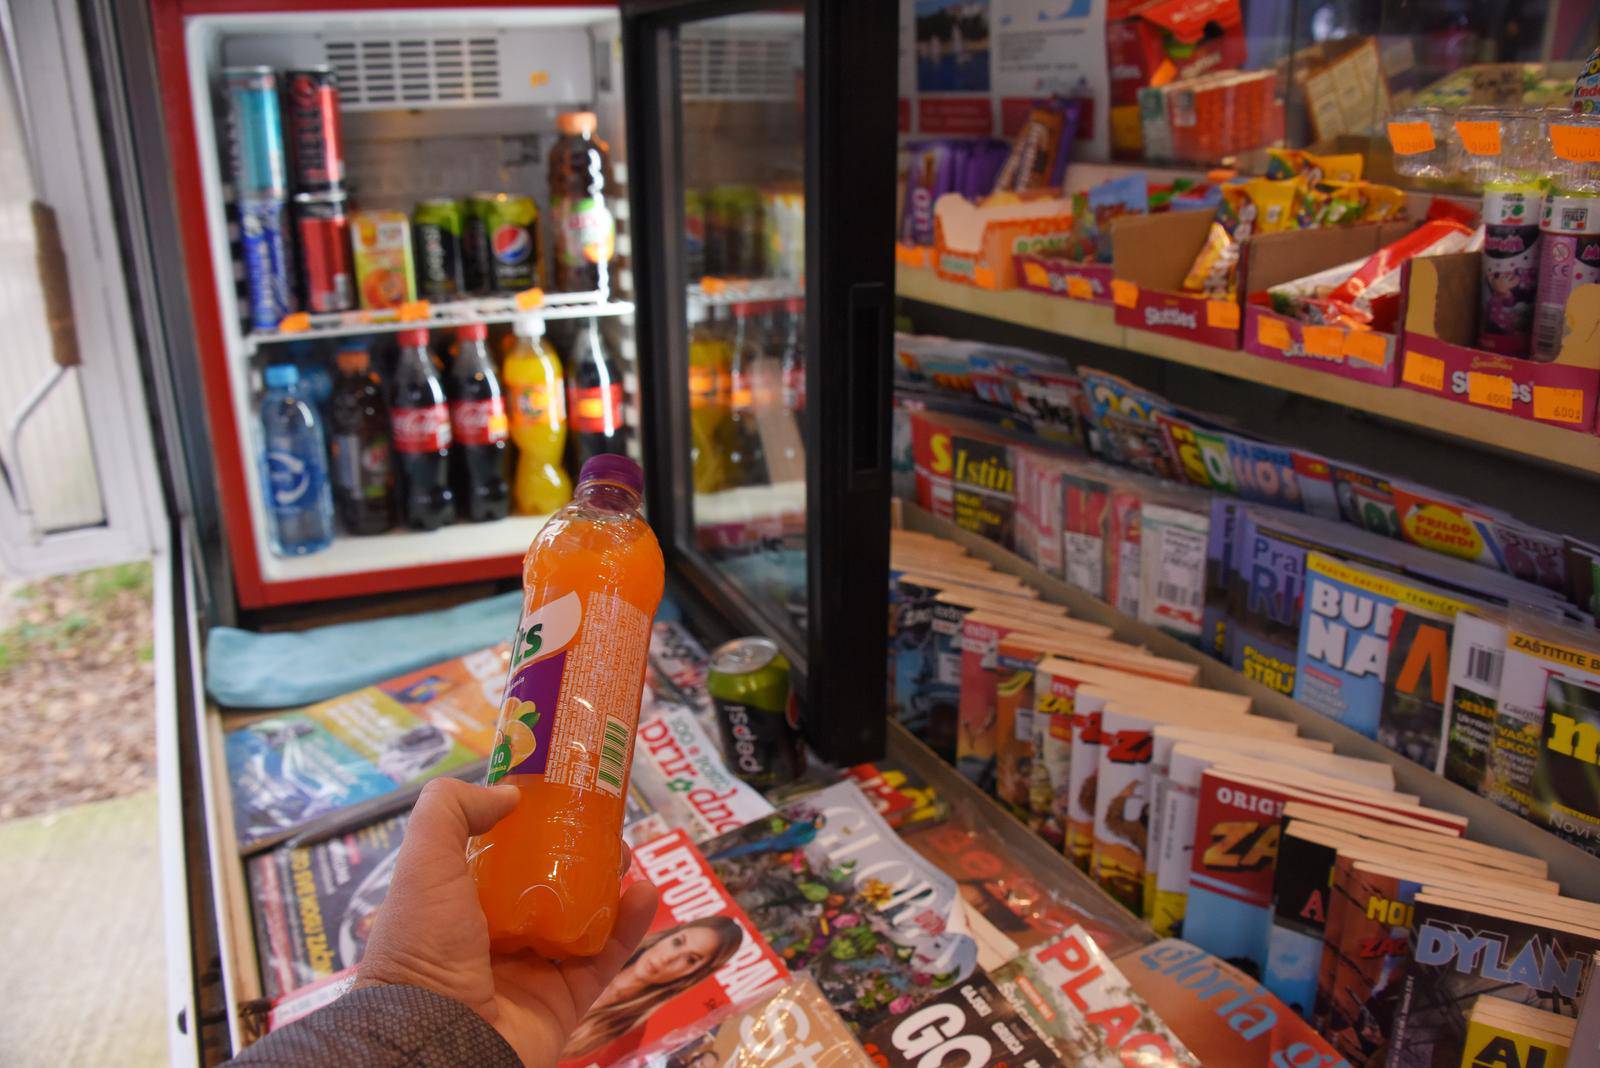 Grad Pula donio je odluku o zabrani prodaje pića na kioscima